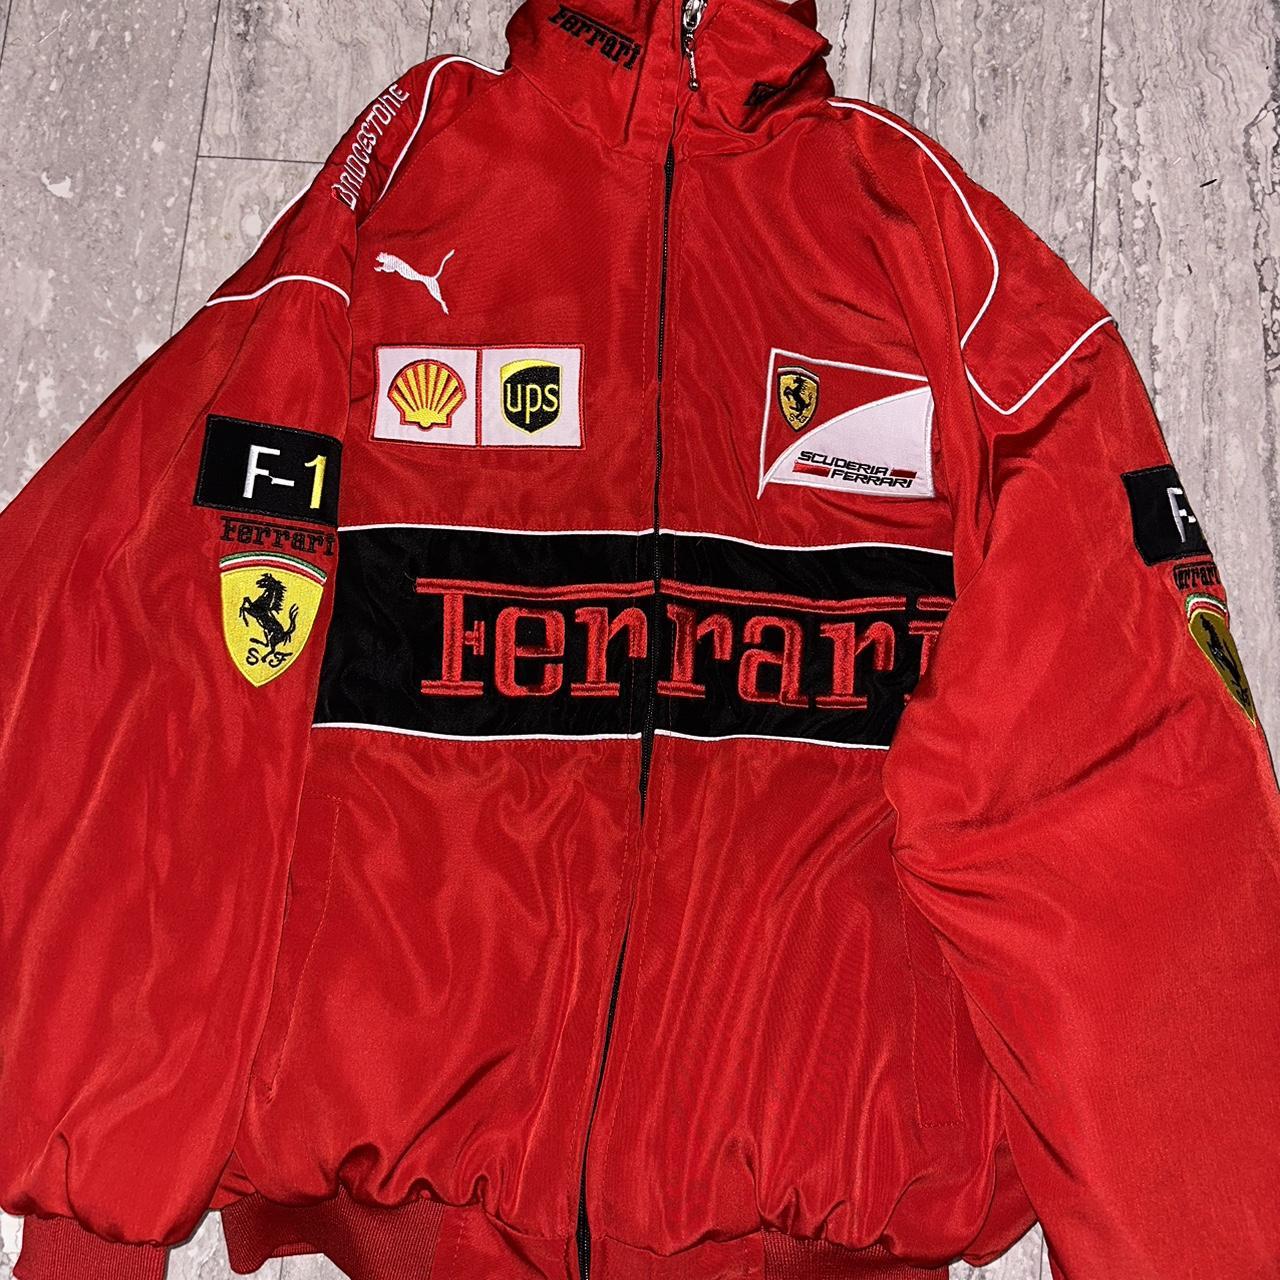 Ferrari F1 Racing Jacket Size L Lots of... - Depop